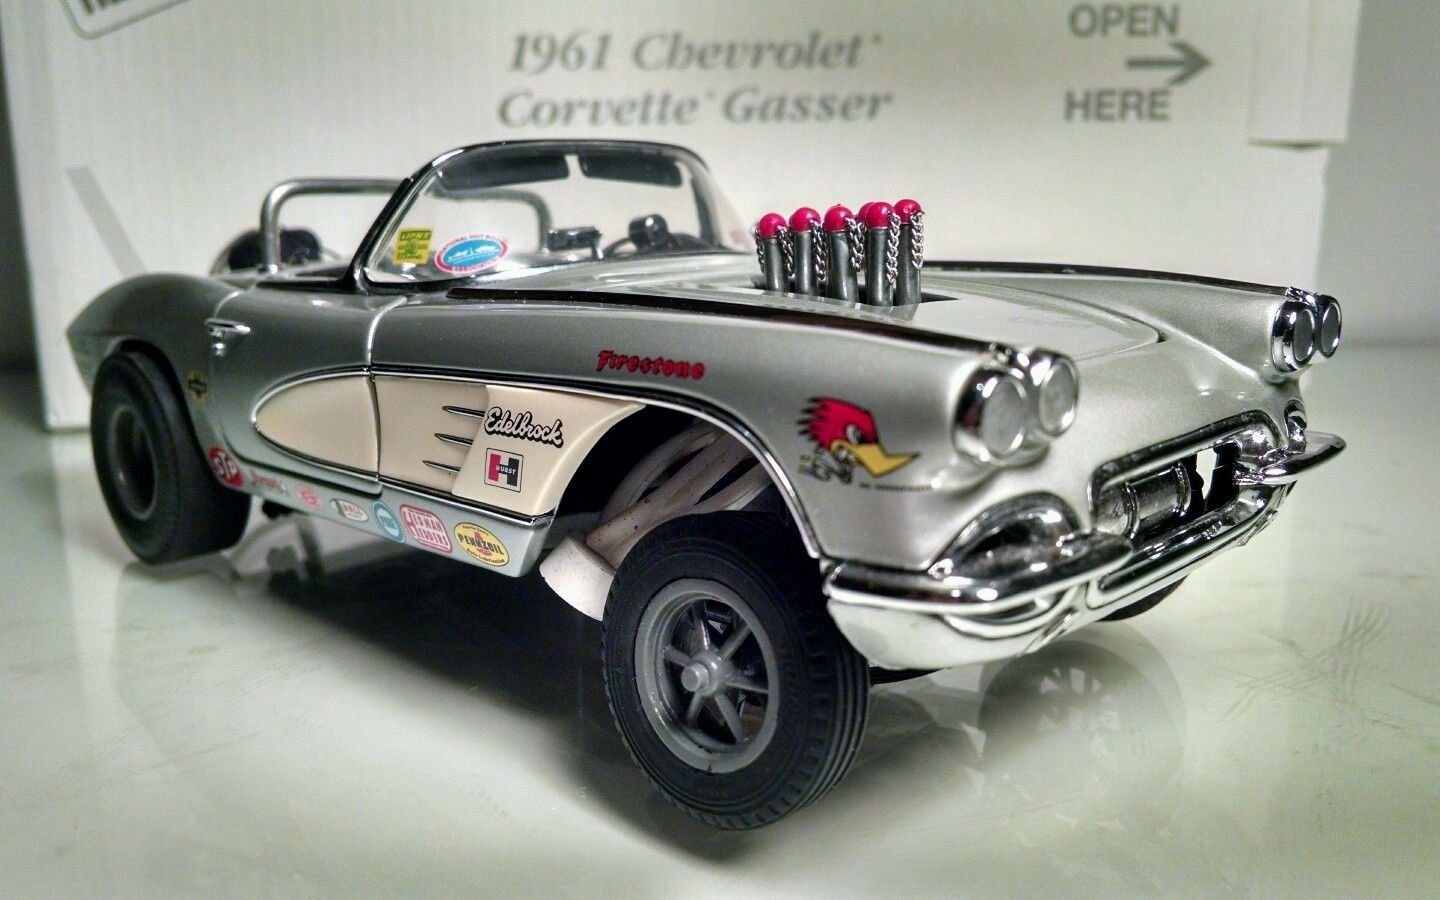 1961, Chevrolet, Corvette, Gasser, Drag, Race, Racing, Custom, Hot, Rod, Rods Wallpaper